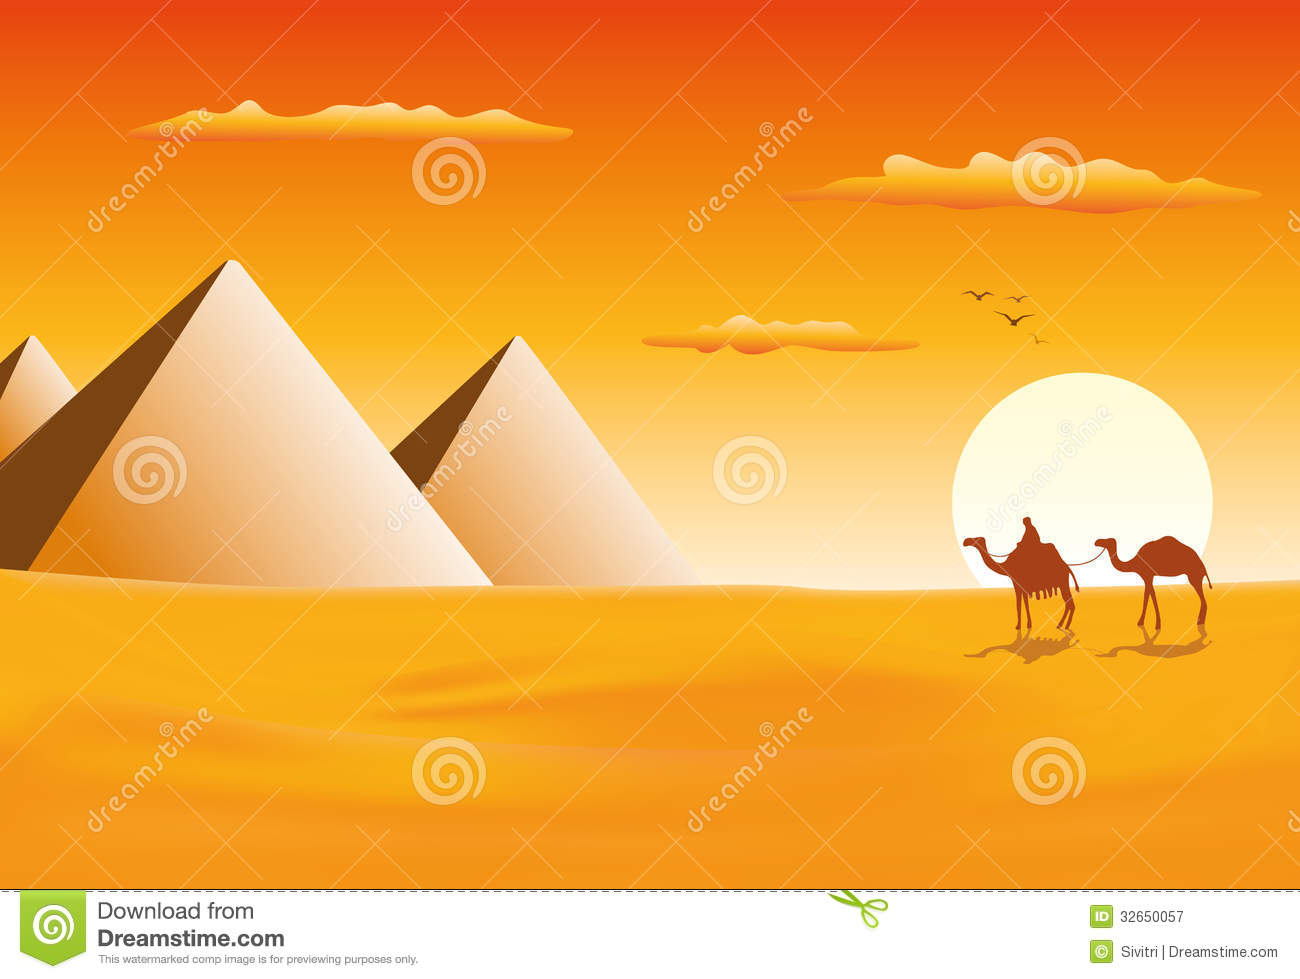 Camel Caravan At The Pyramids Of Giza Royalty Free Stock Photography